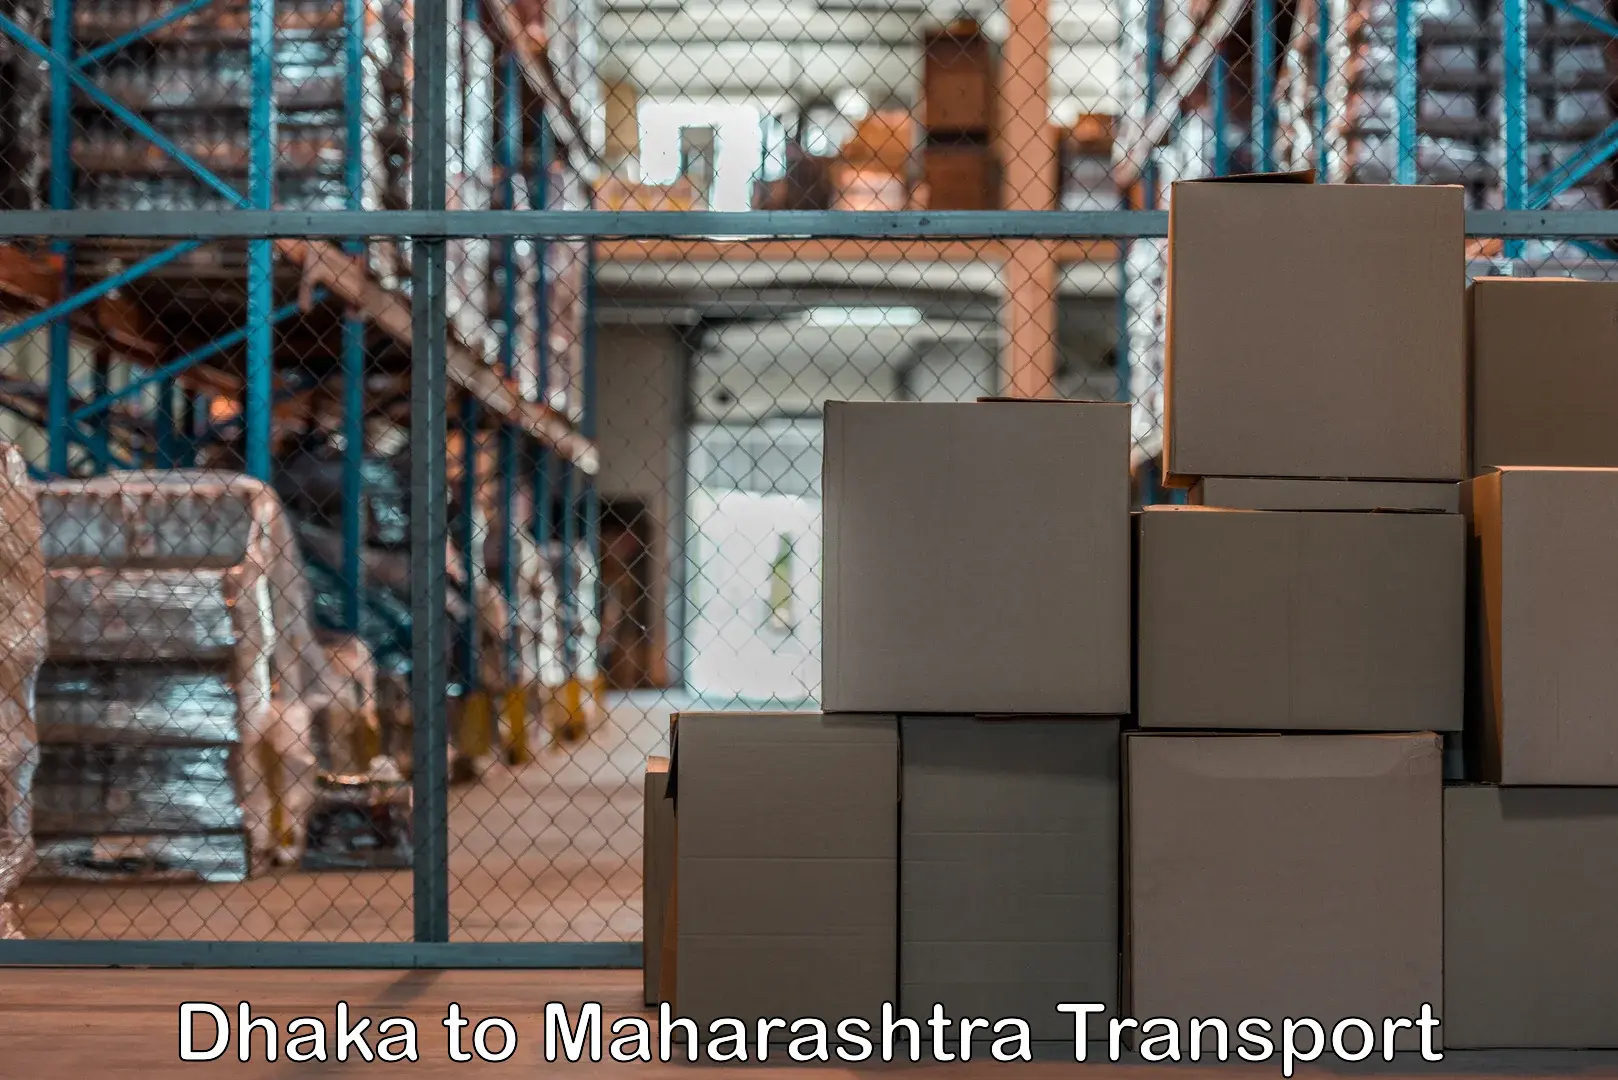 Container transport service Dhaka to Maharashtra